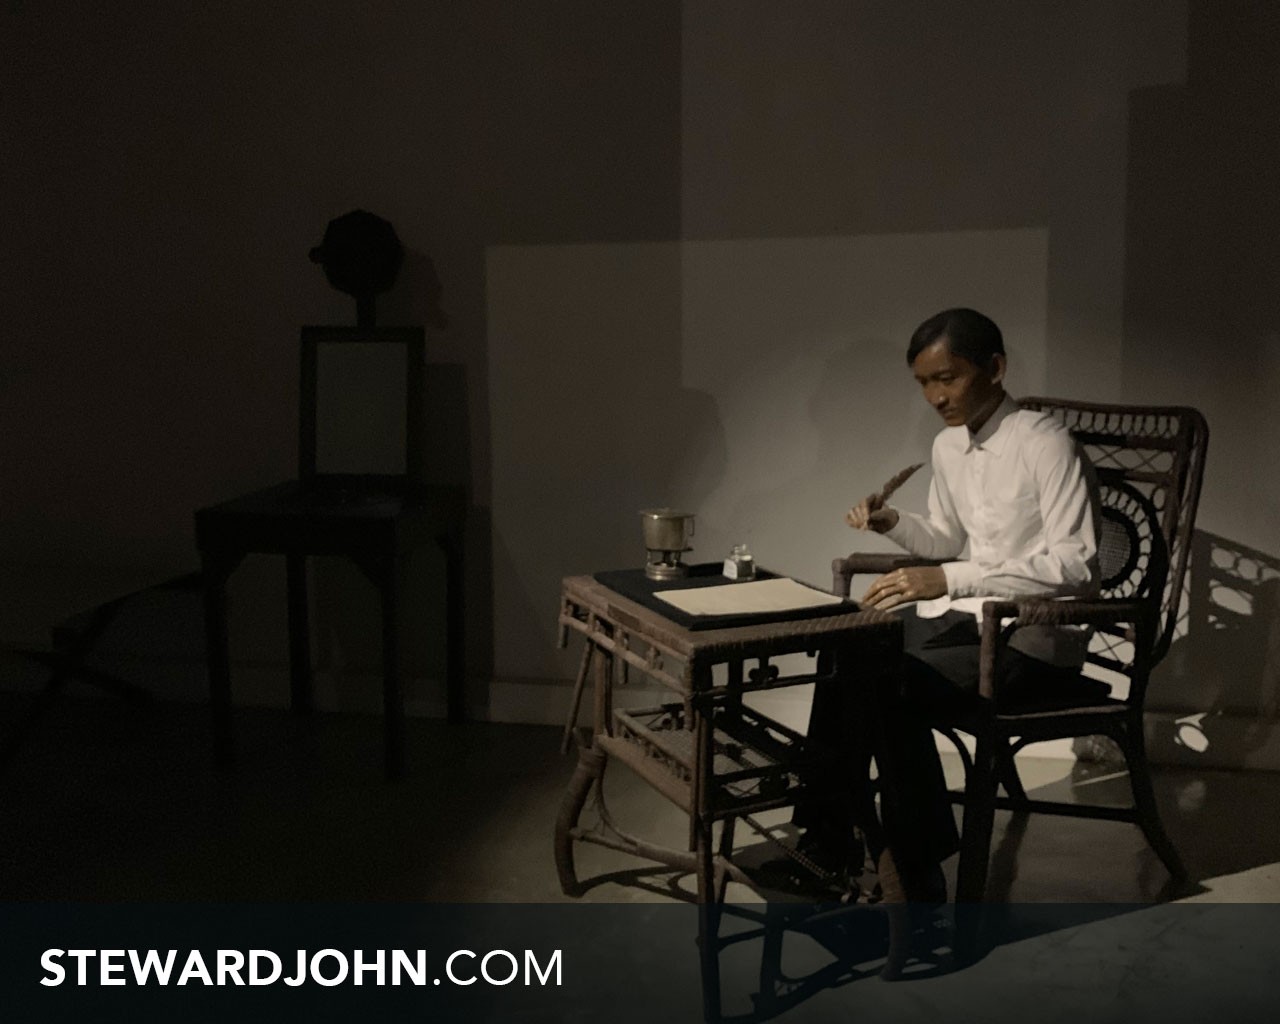 Scene of Jose Rizal writing his memoir